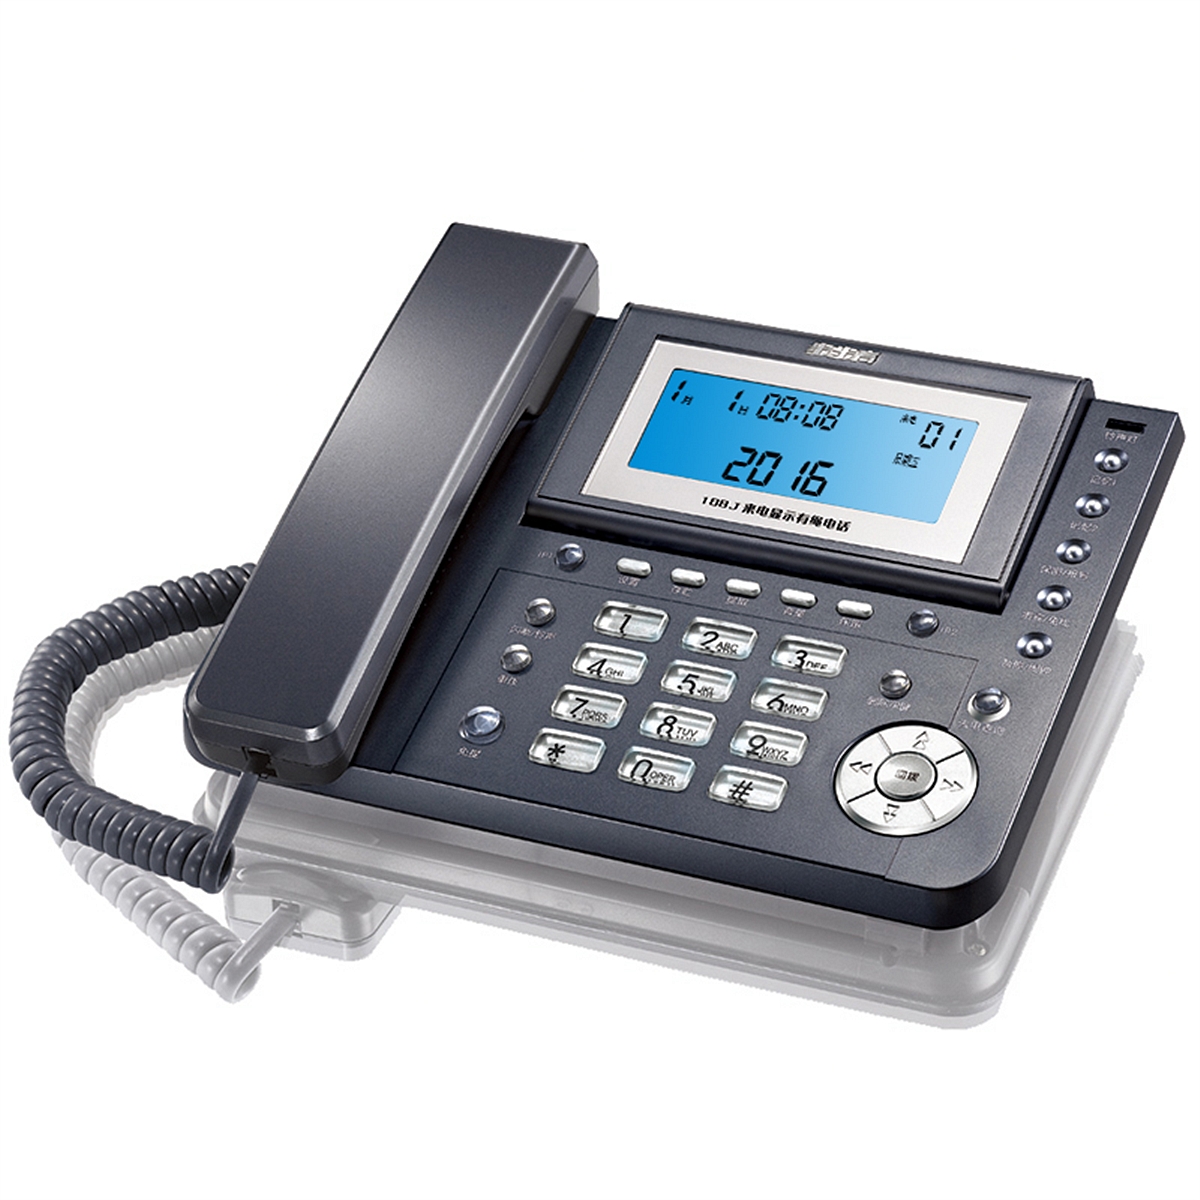 步步高HCD007(188)TSDL电话机 深灰色(部)